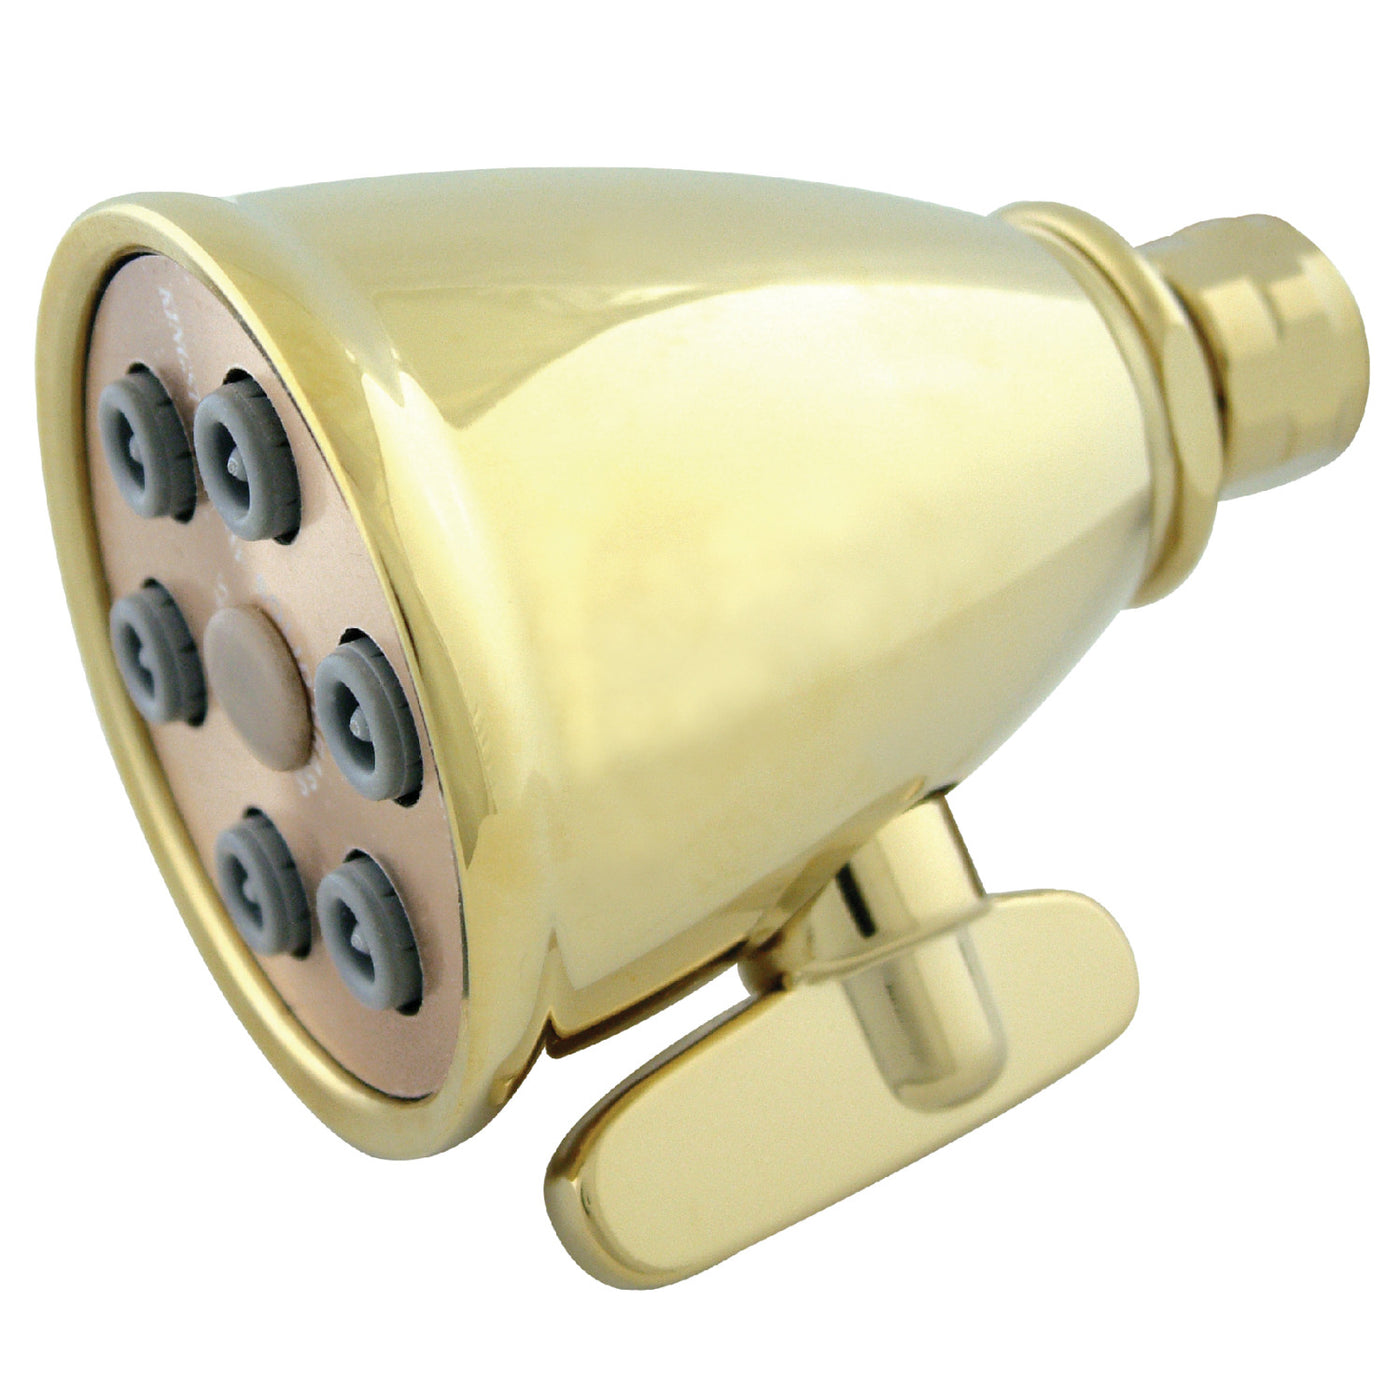 Elements of Design DK1382 Adjustable Jet Spray Shower Head, Polished Brass